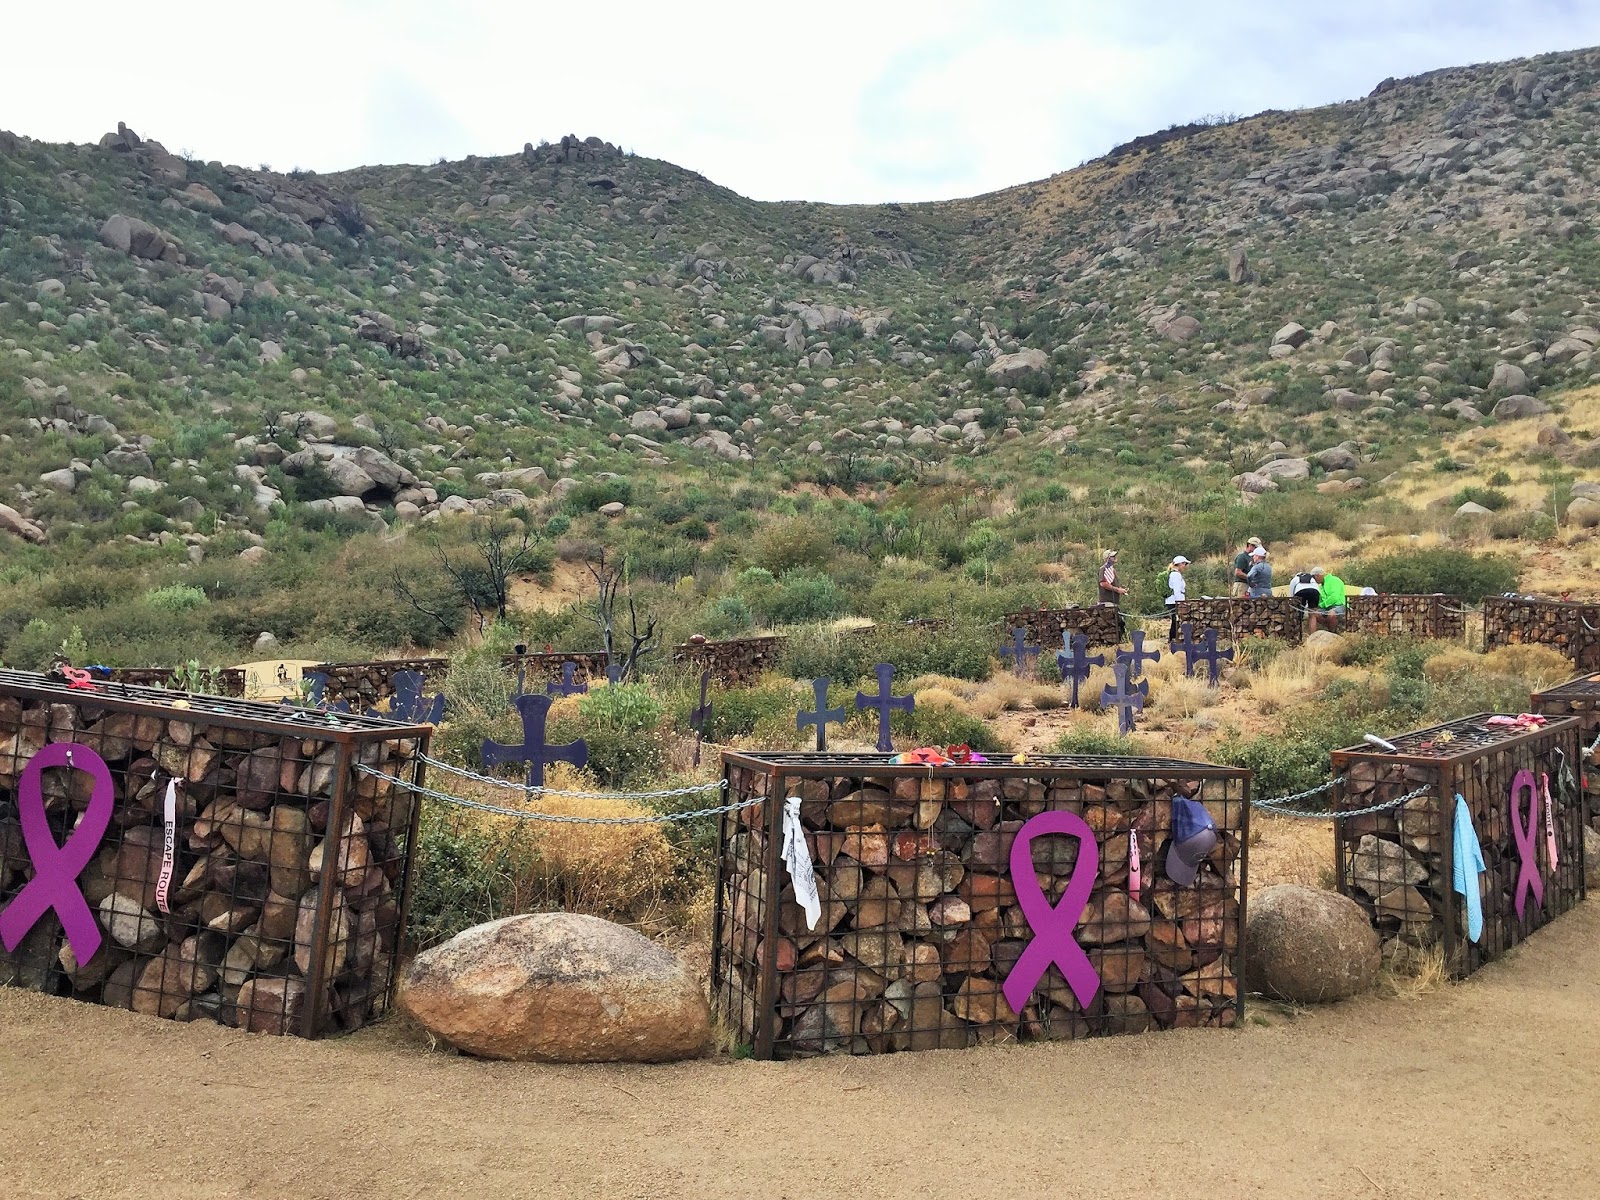 Down the Road Granite Mountain Hotshot Memorial, AZ Hike